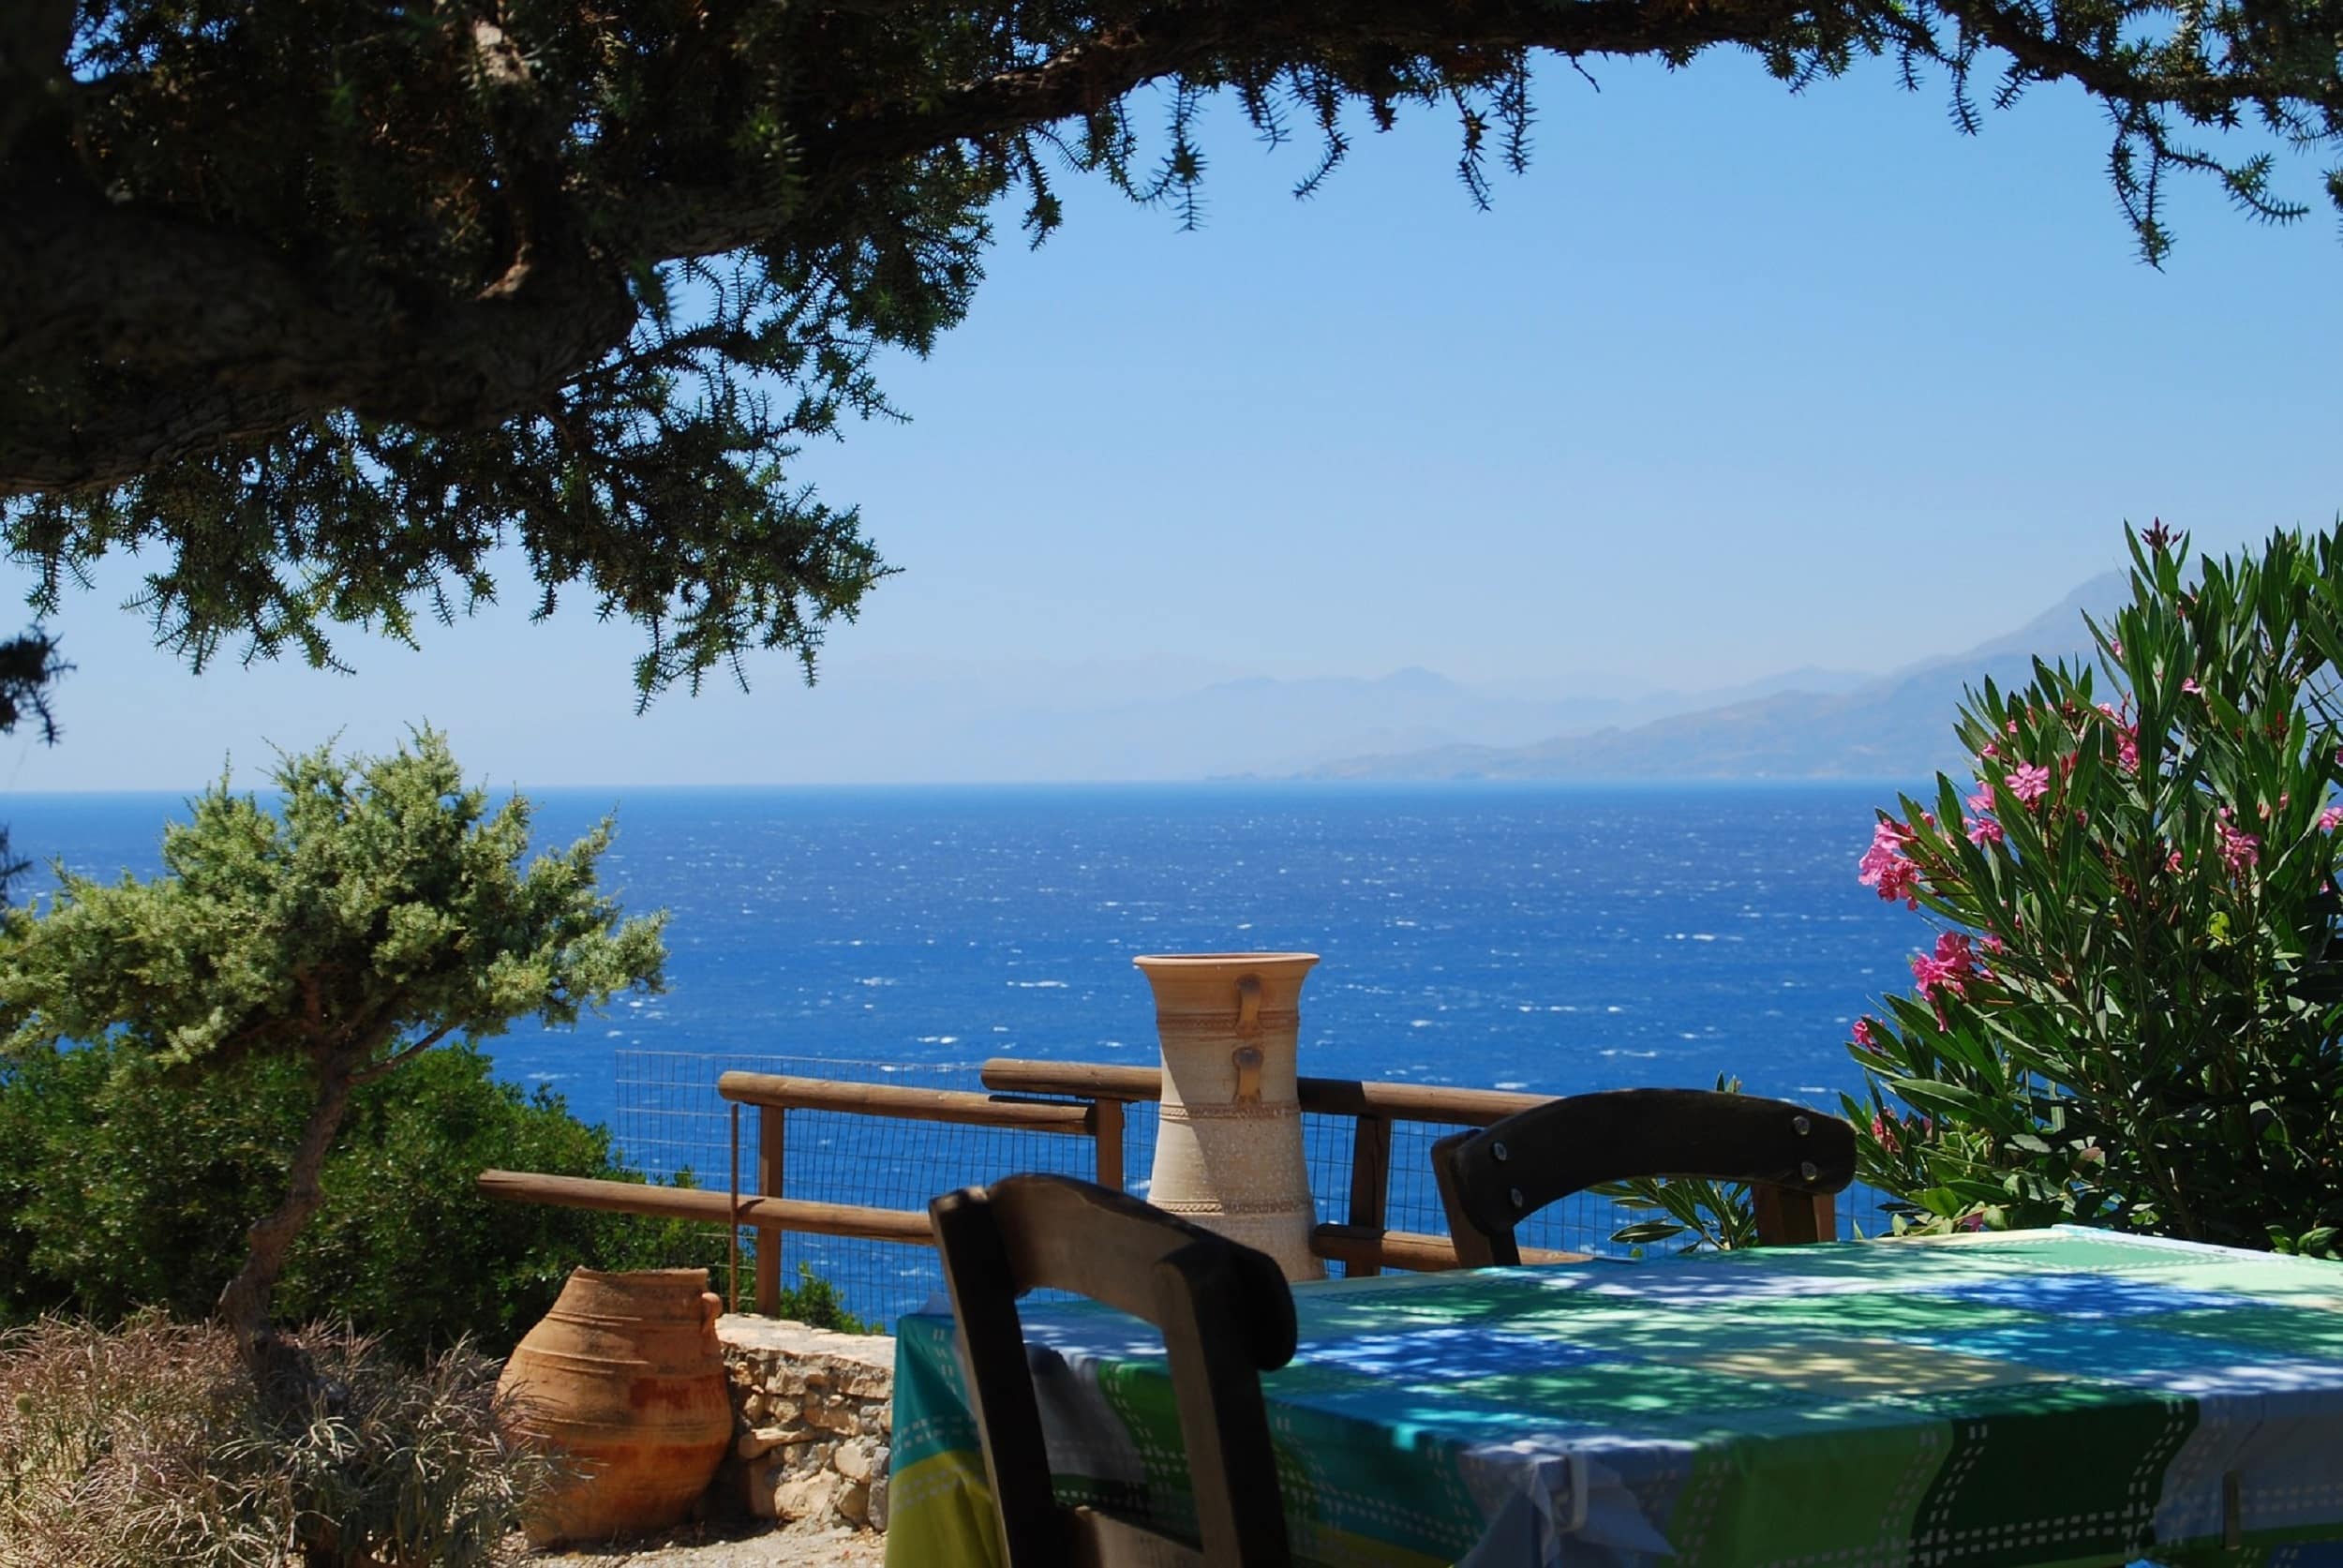 Ferienhaus auf Kreta: Urlaub auf Griechenlands größter Insel